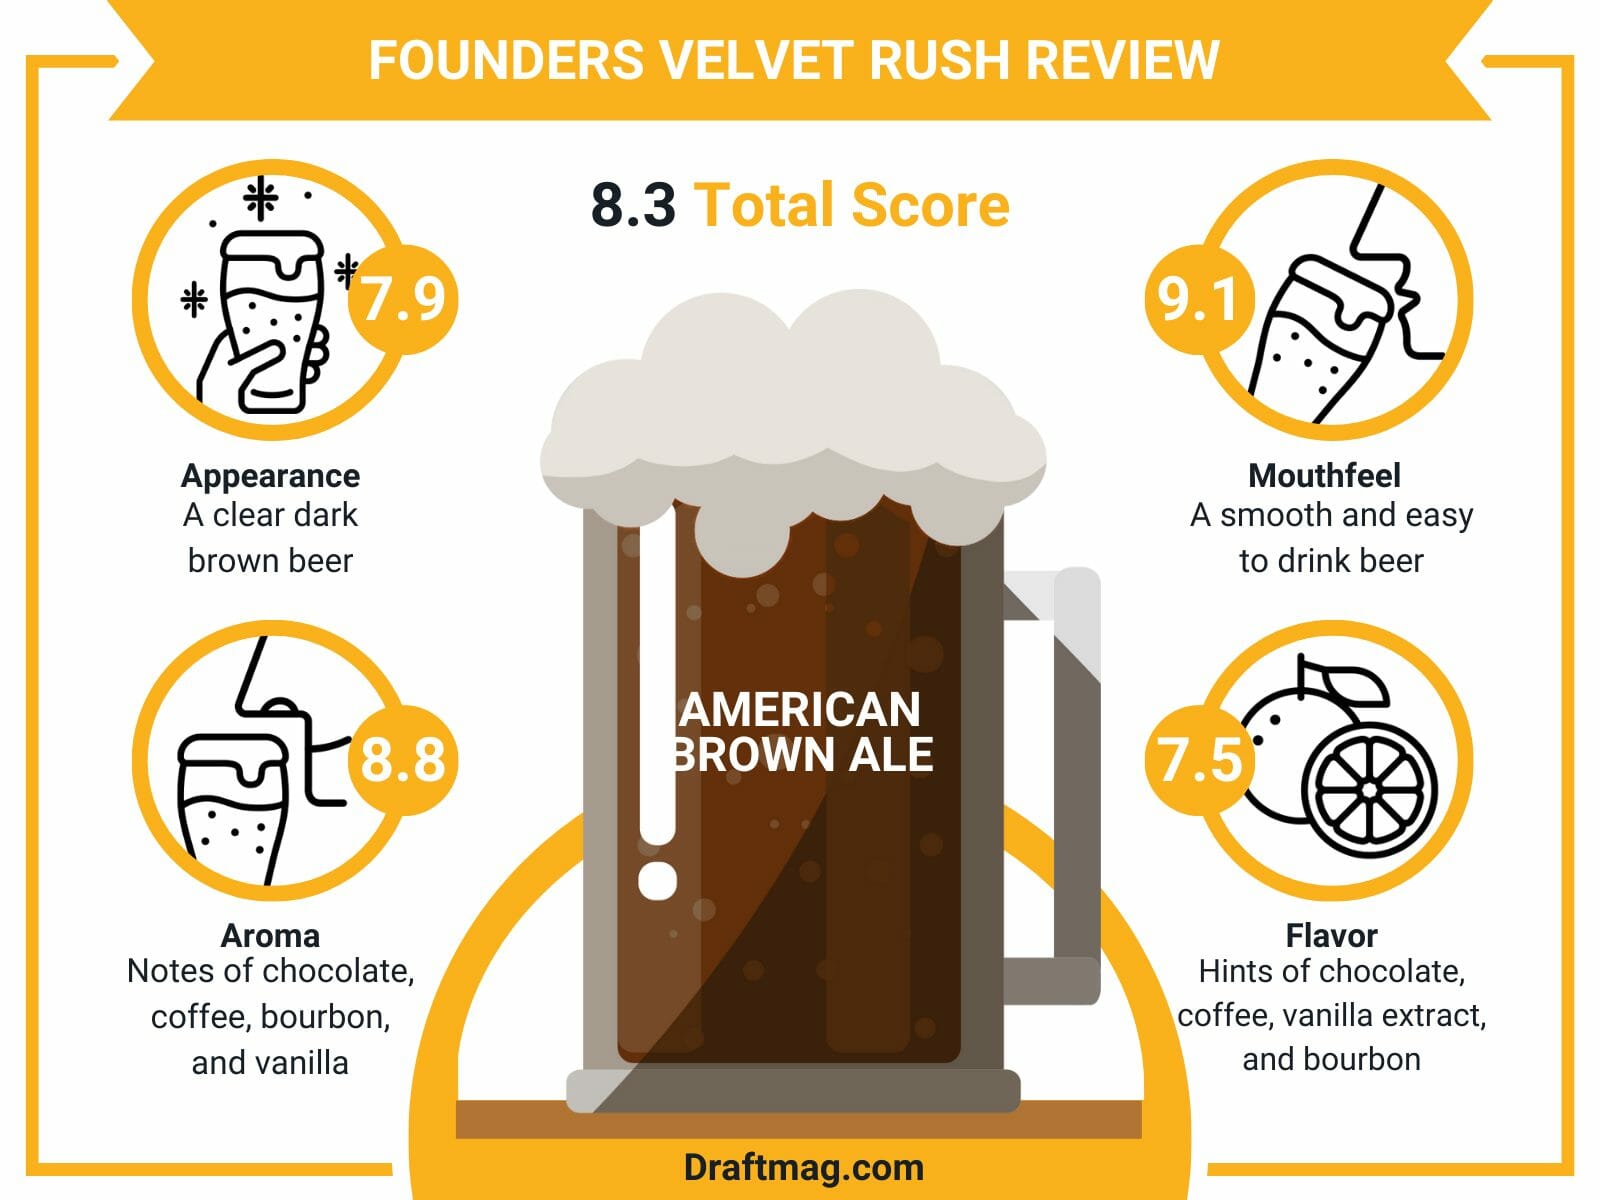 Founders Velvet Rush Review Infographic